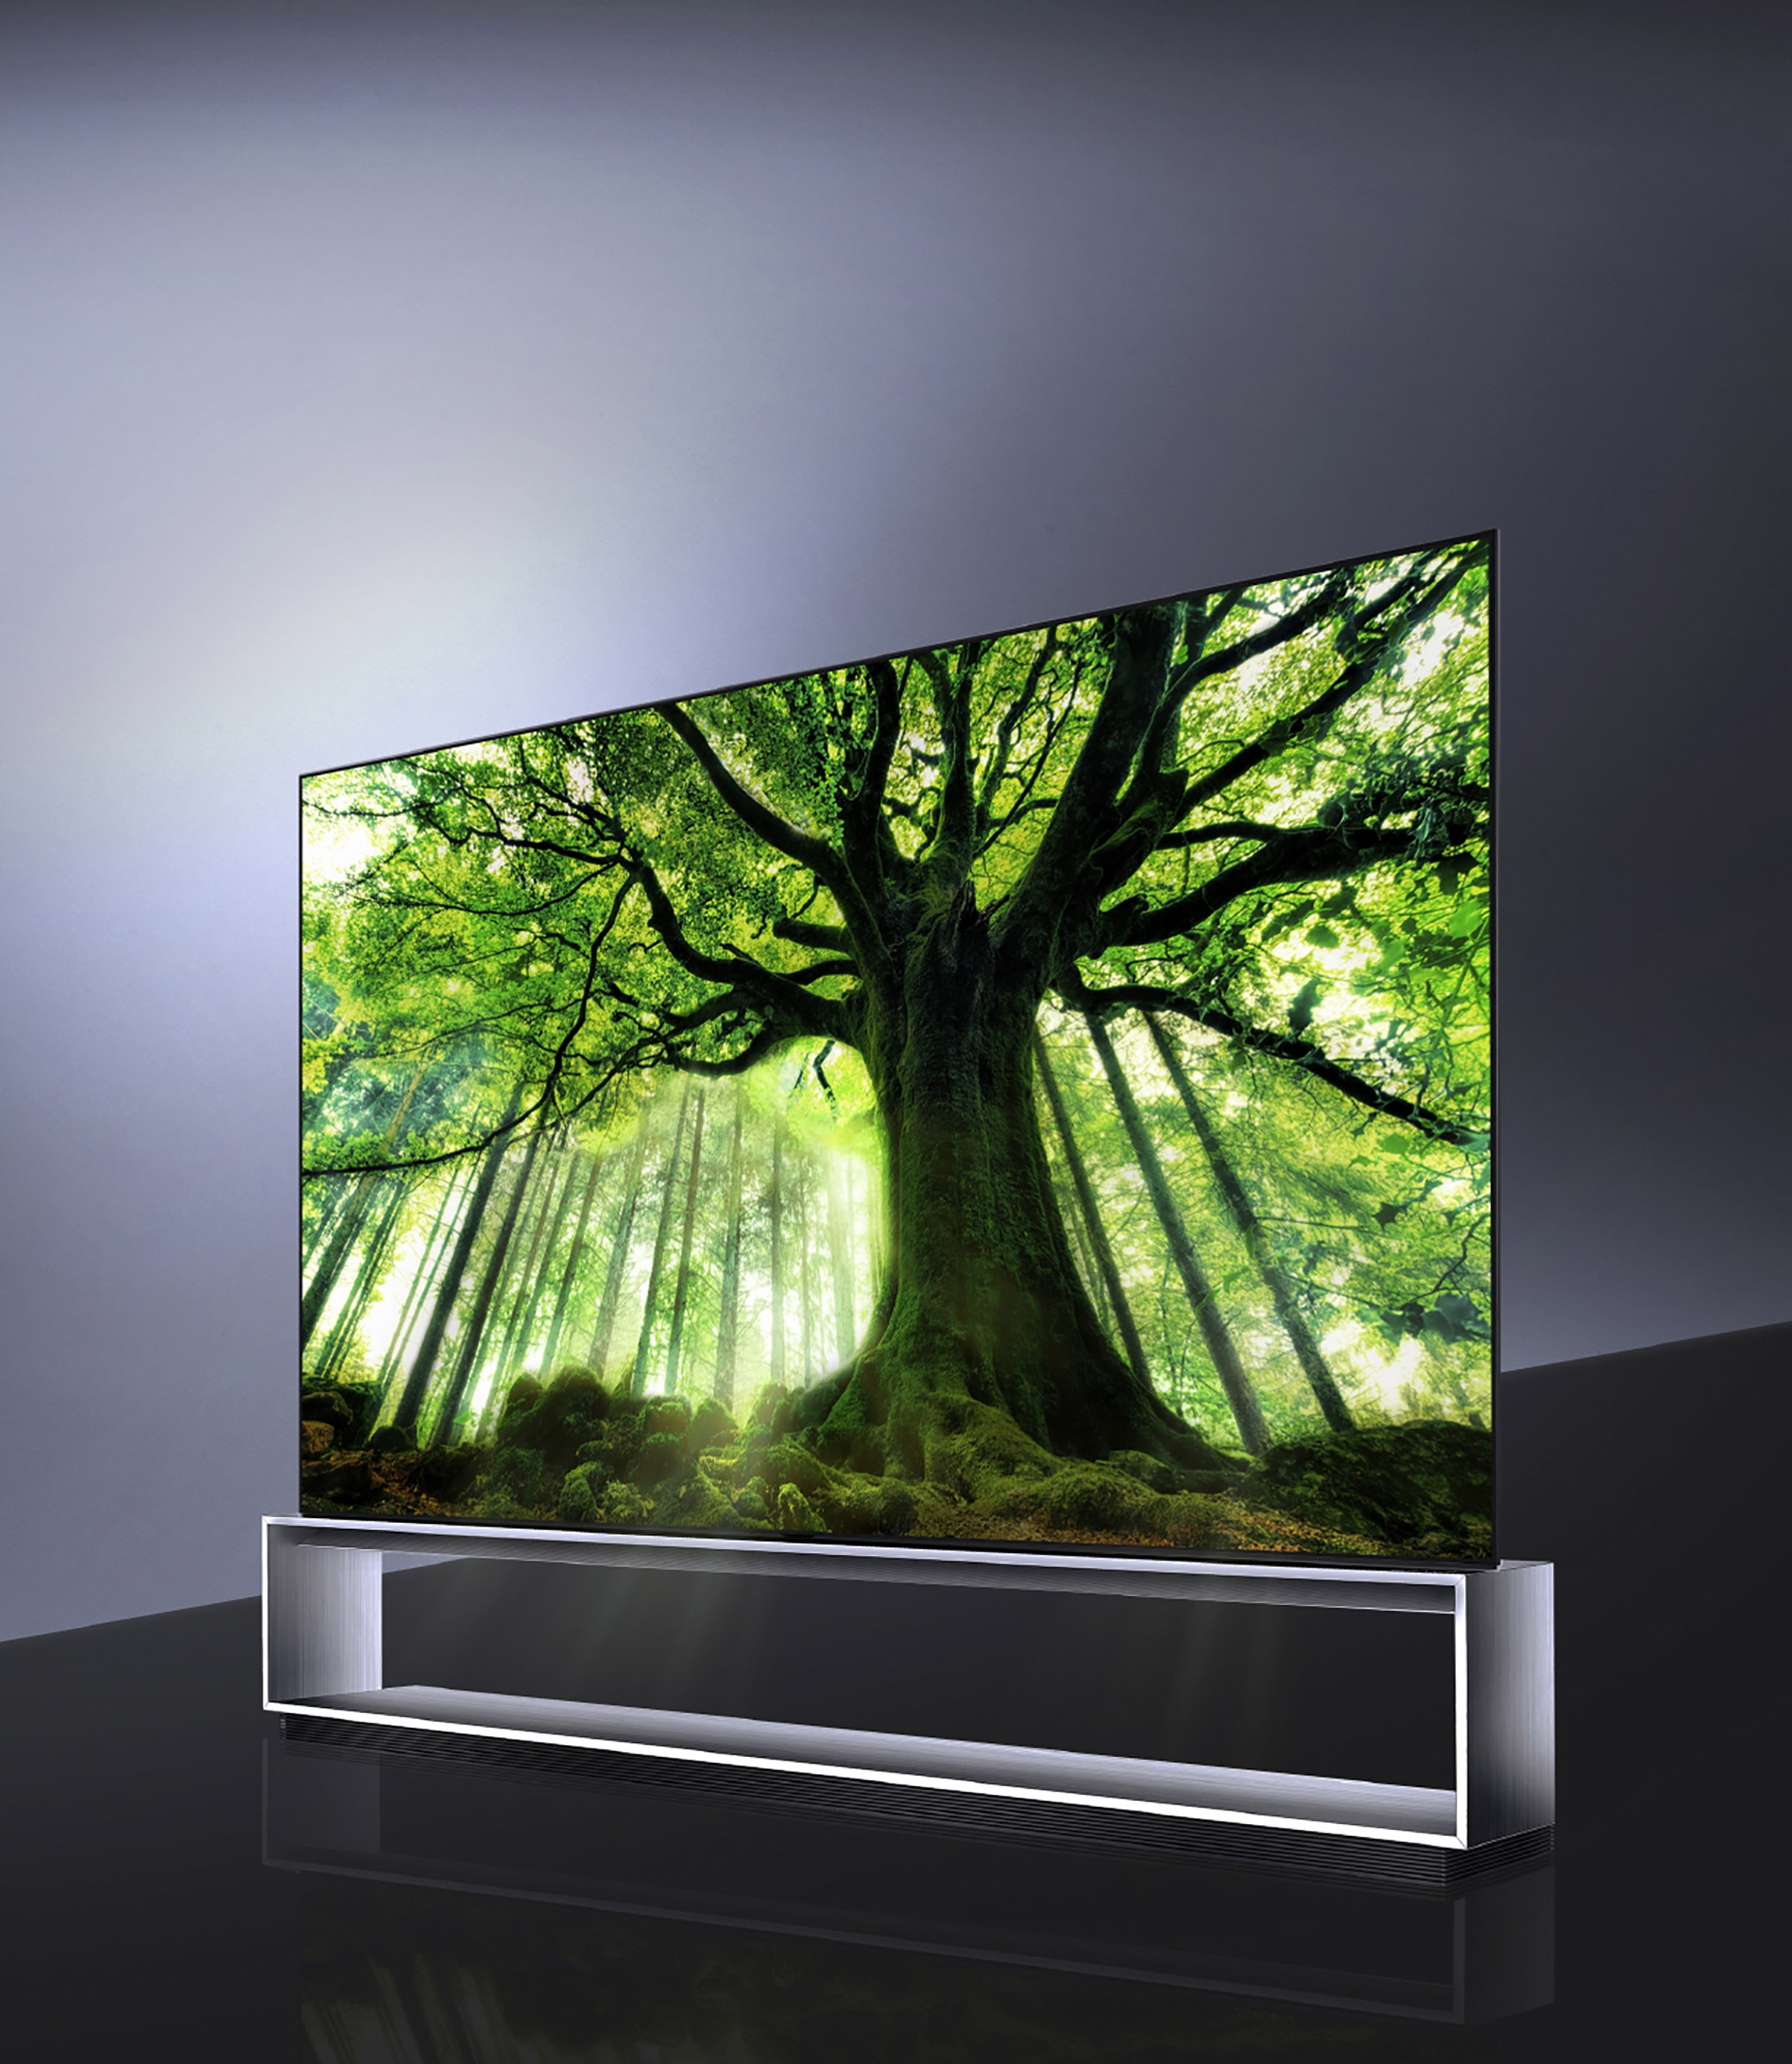 Купить телевизор 2020. LG 88 OLED 8k. LG Signature 88 8k OLED. LG Signature 88 8k OLED телевизор. LG Signature OLED.